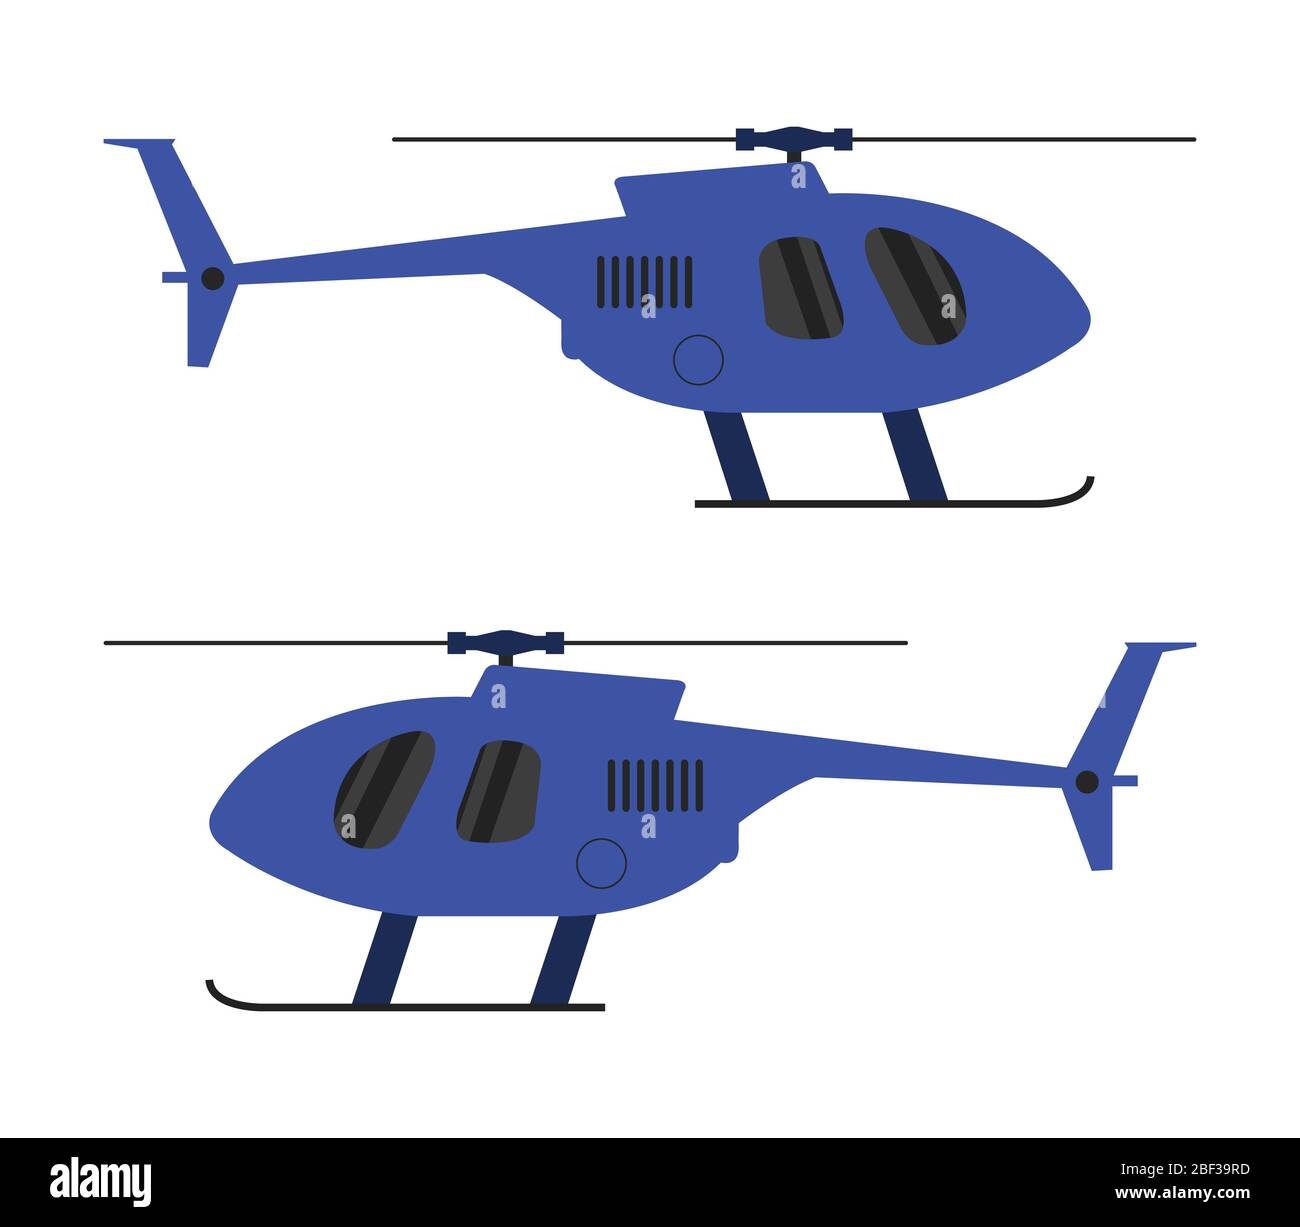 Hubschraubersymbol in Vektor auf weißem Hintergrund dargestellt Stock Vektor